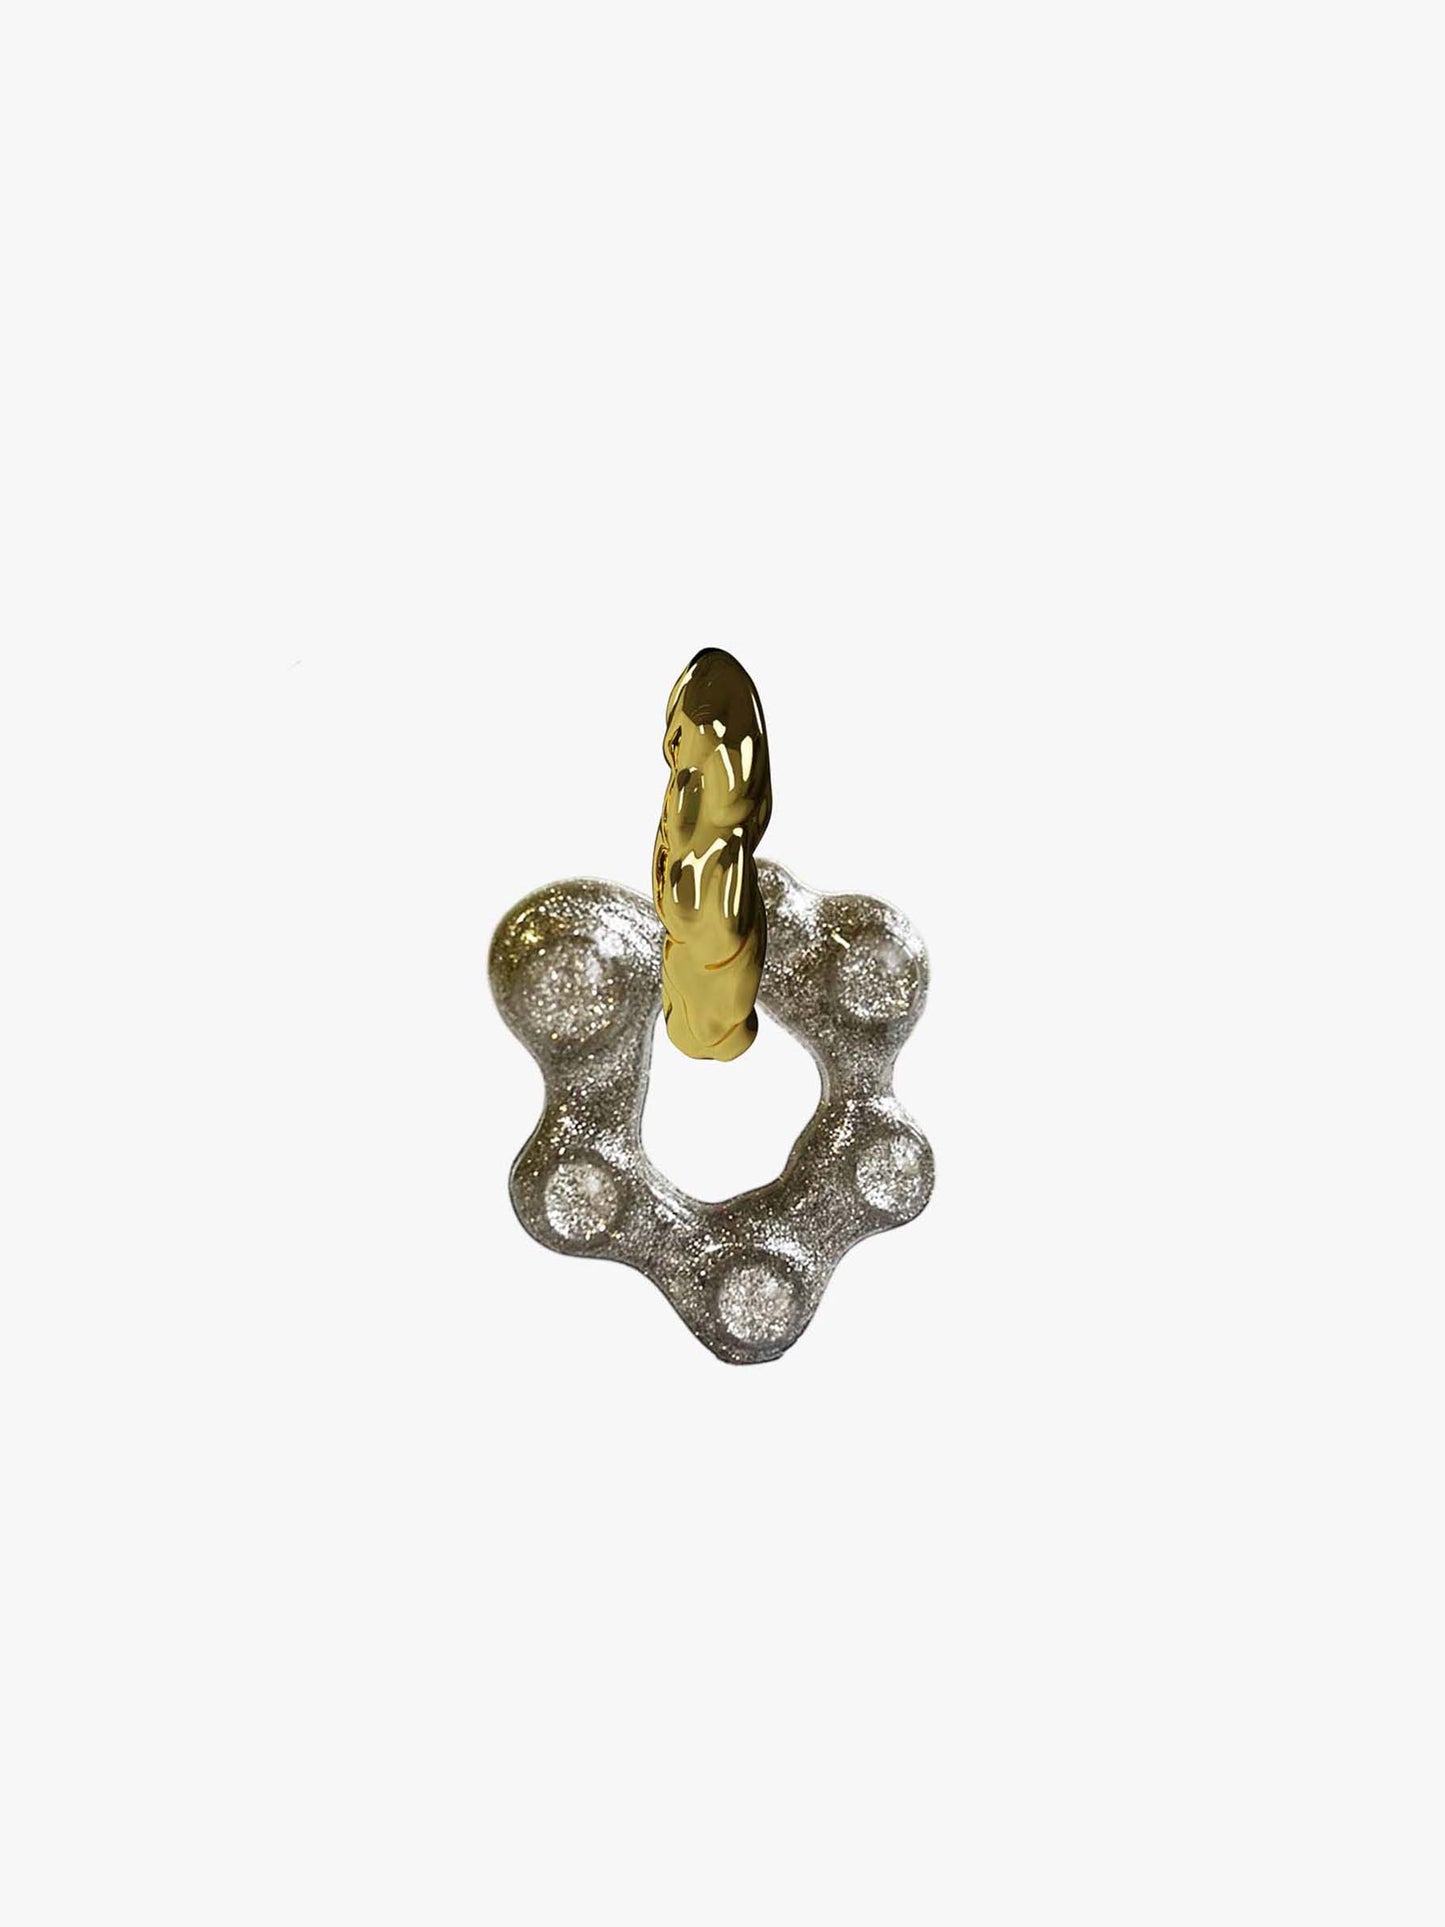 Oyo Nus shimmer gold earring (pair)